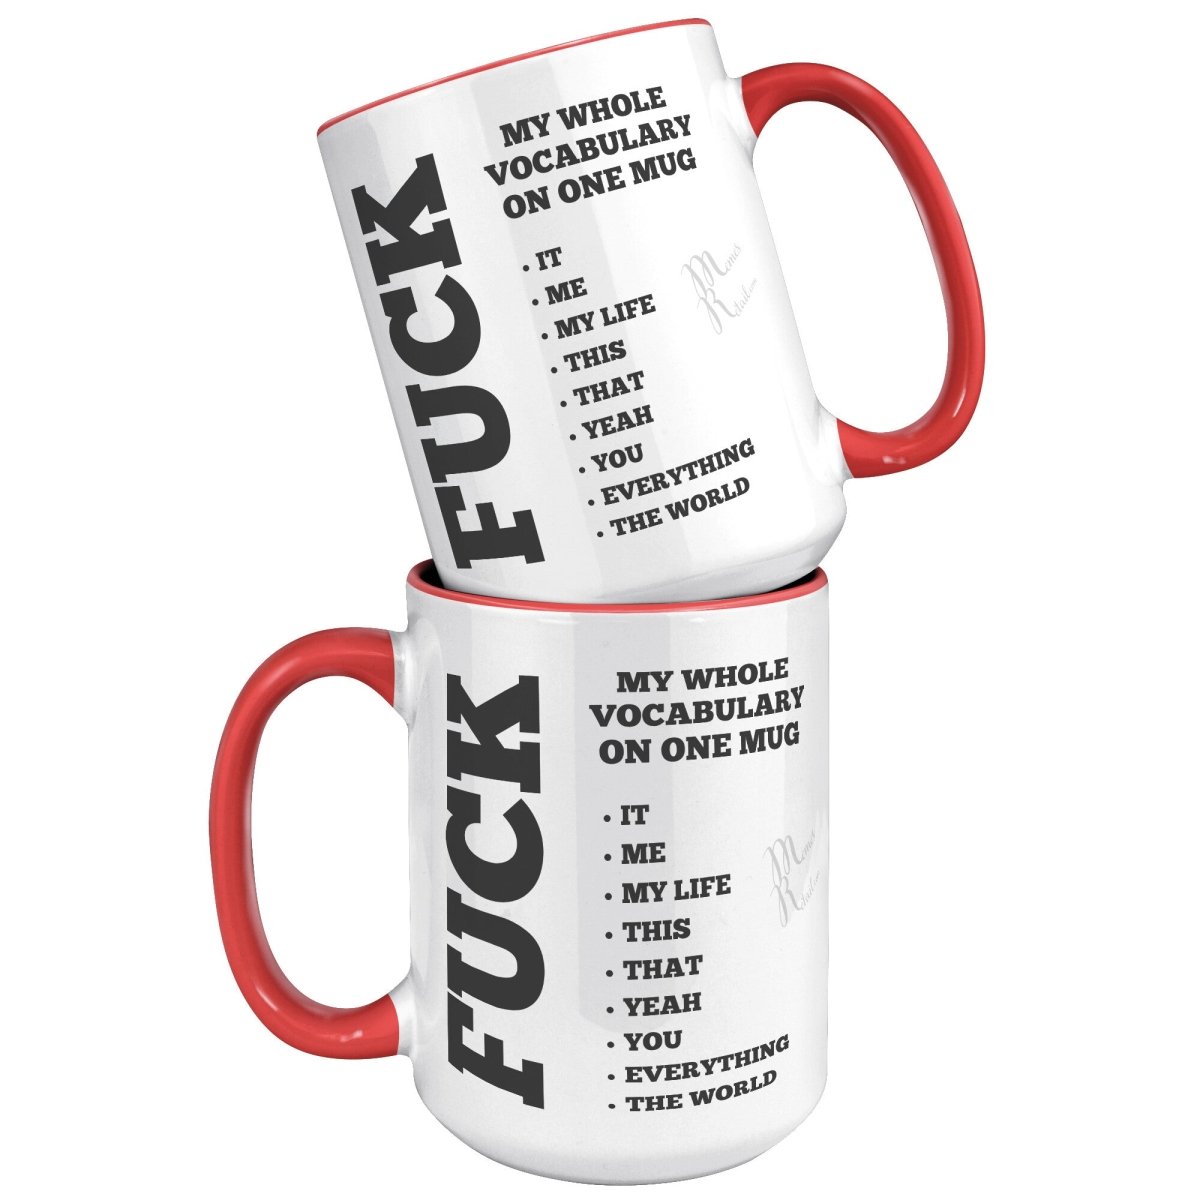 My whole vocabulary on one mug, - MemesRetail.com